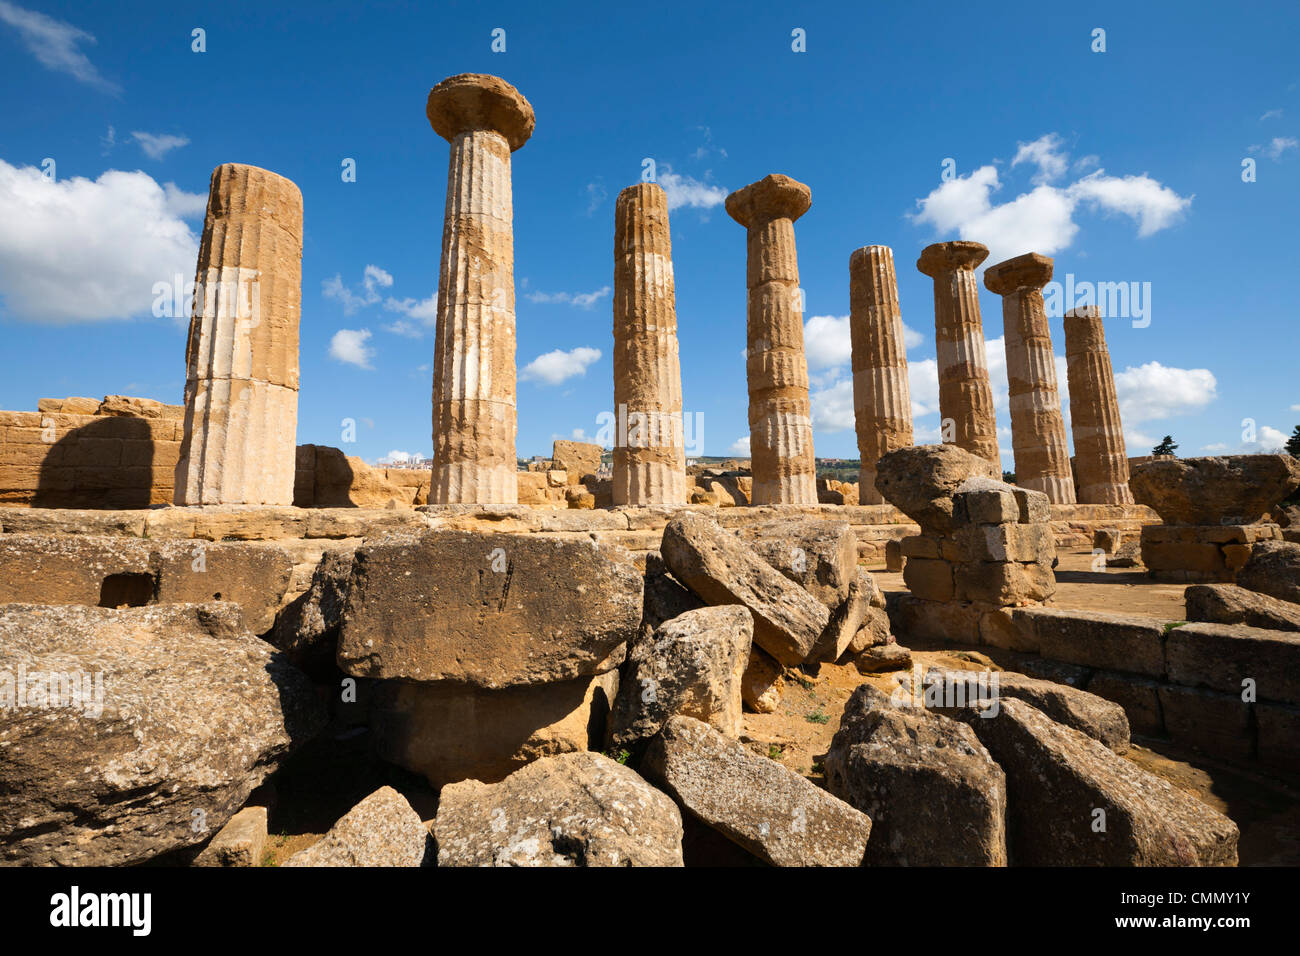 Columns of the Tempio di Ercole, Valle dei Templi, UNESCO World Heritage Site, Agrigento, Sicily, Italy, Europe Stock Photo